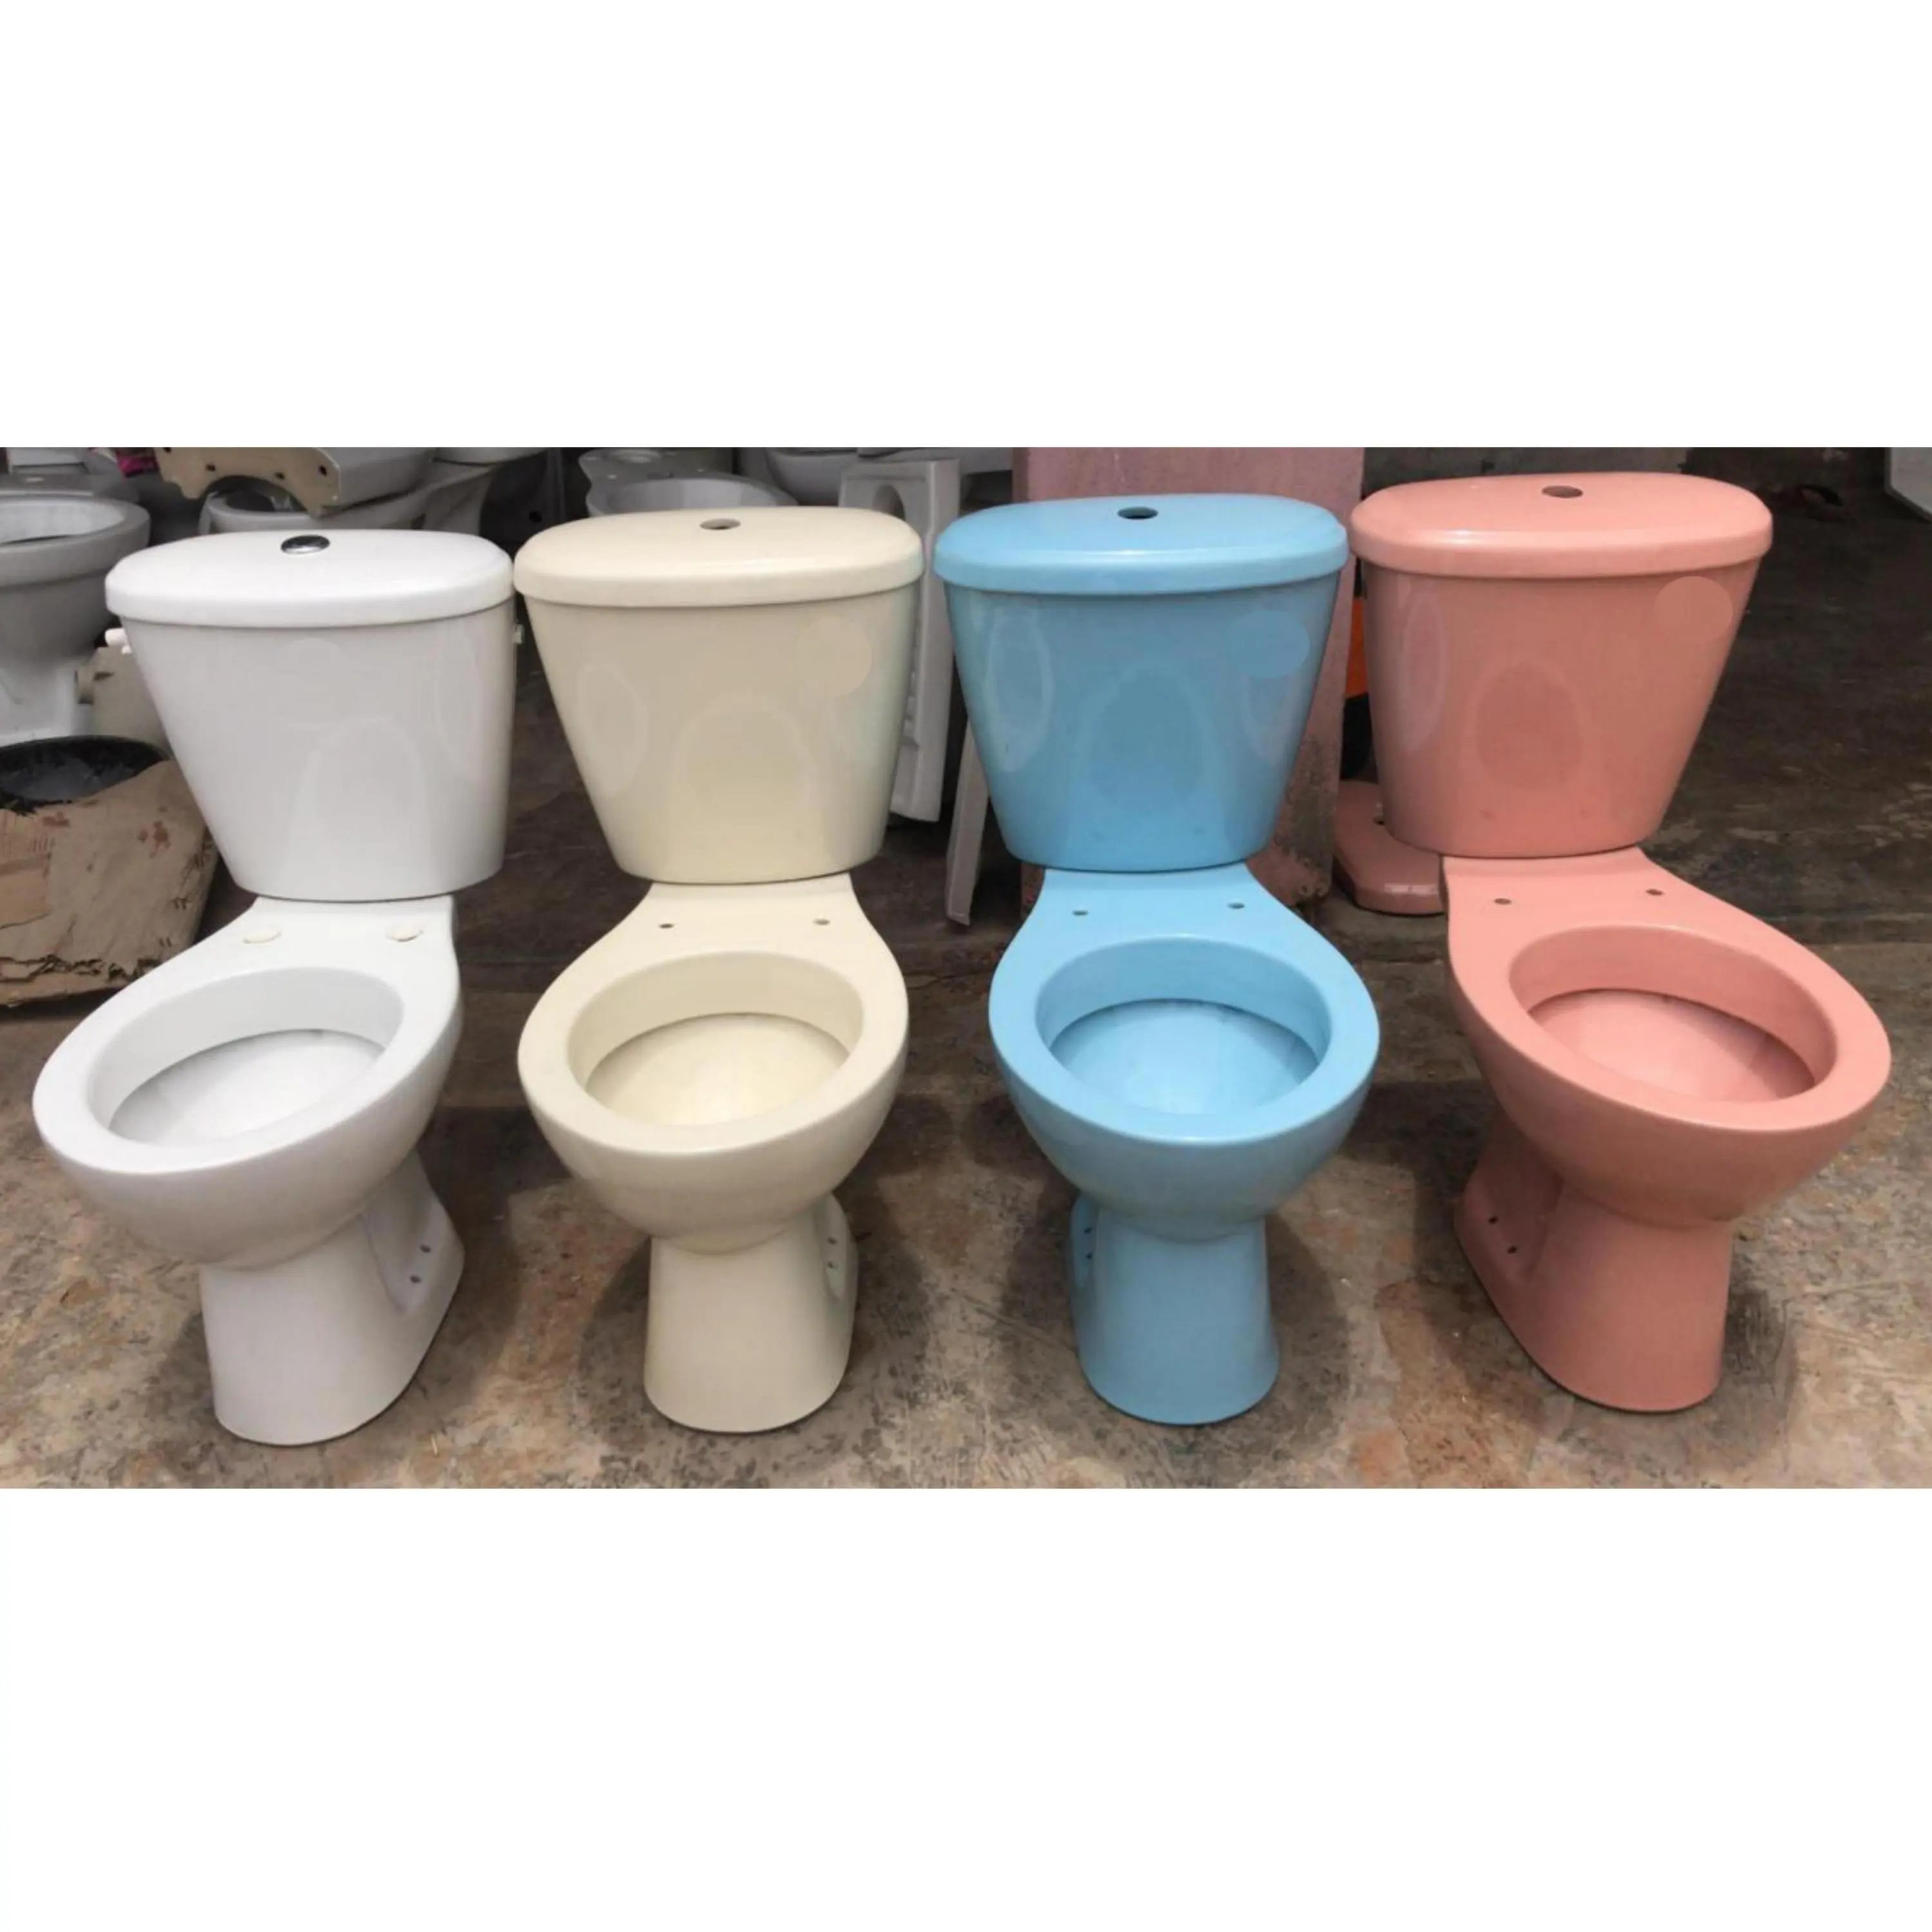 Barang Sanitasi Desainer Warna Gading Kloset Air Dua Potong Commode Toilet Seat dari India Kelas 1 Kualitas Premium Harga Terendah